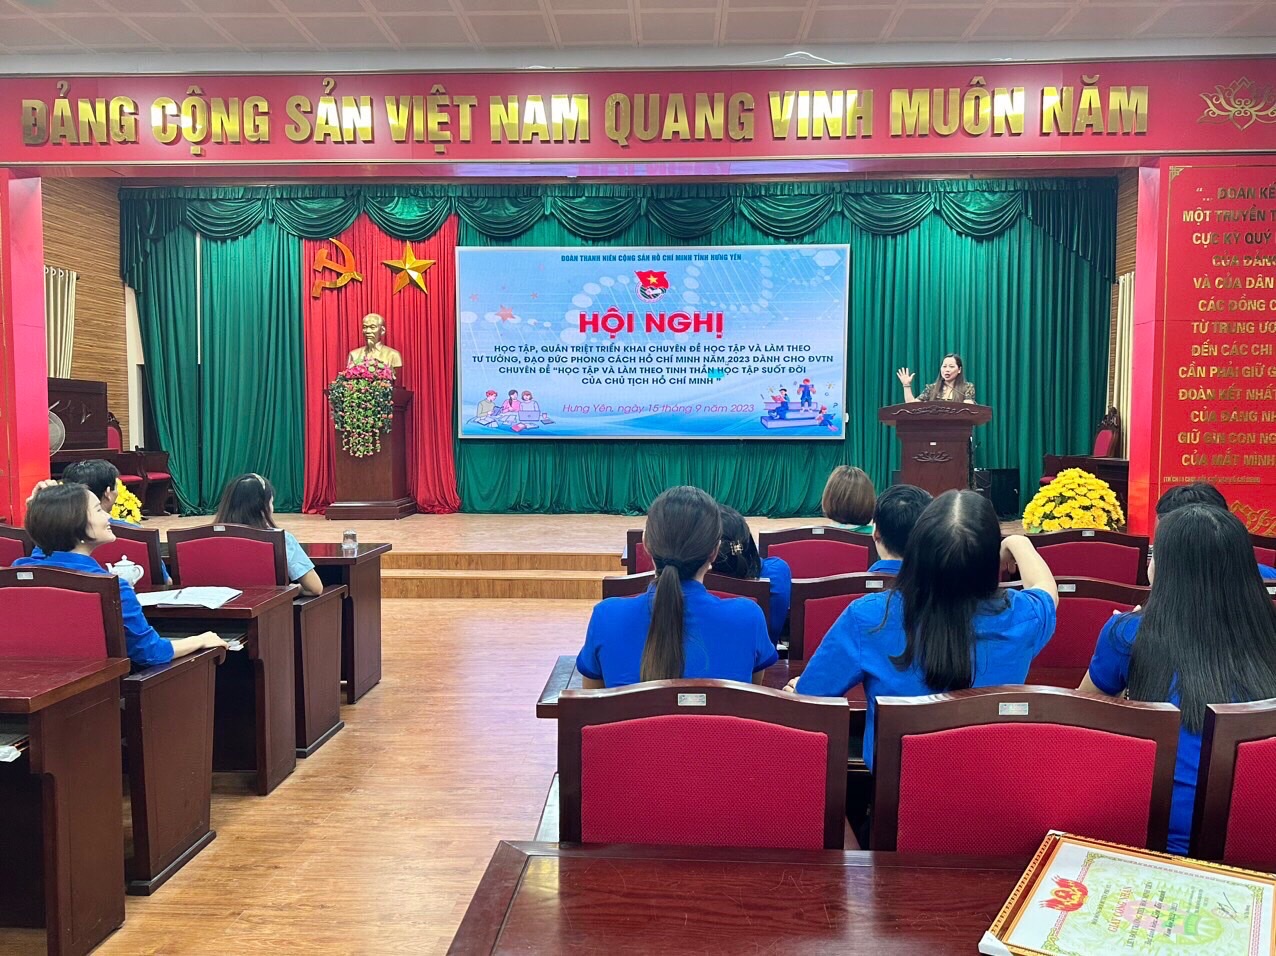 Tỉnh đoàn tổ chức Hội nghị học tập chuyên đề “Học tập và làm theo tư tưởng, đạo đức, phong cách Hồ Chí Minh" cho cán bộ đoàn và đoàn viên năm 2023